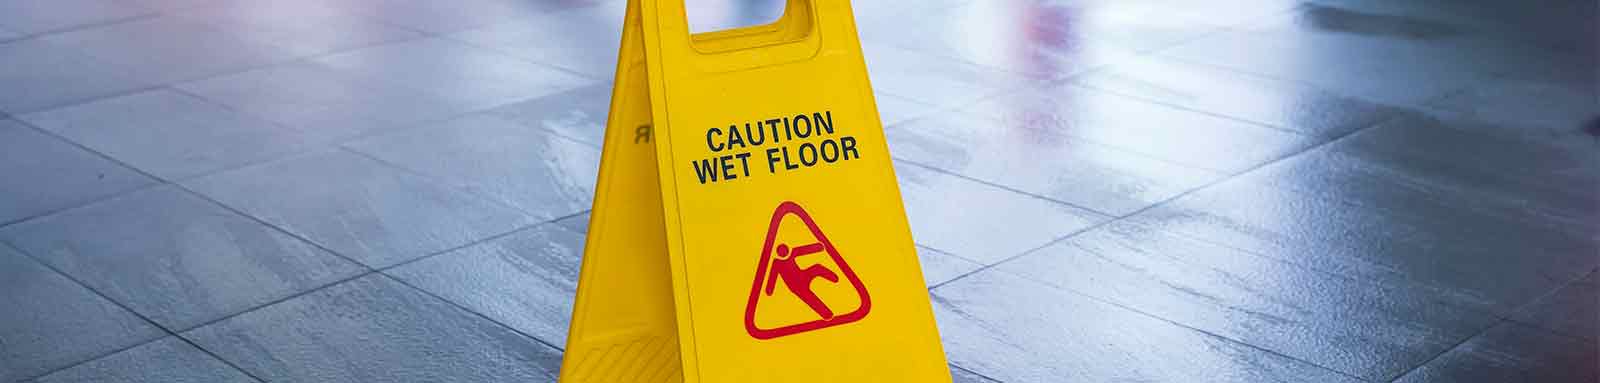 Wet floor caution sign on office floor